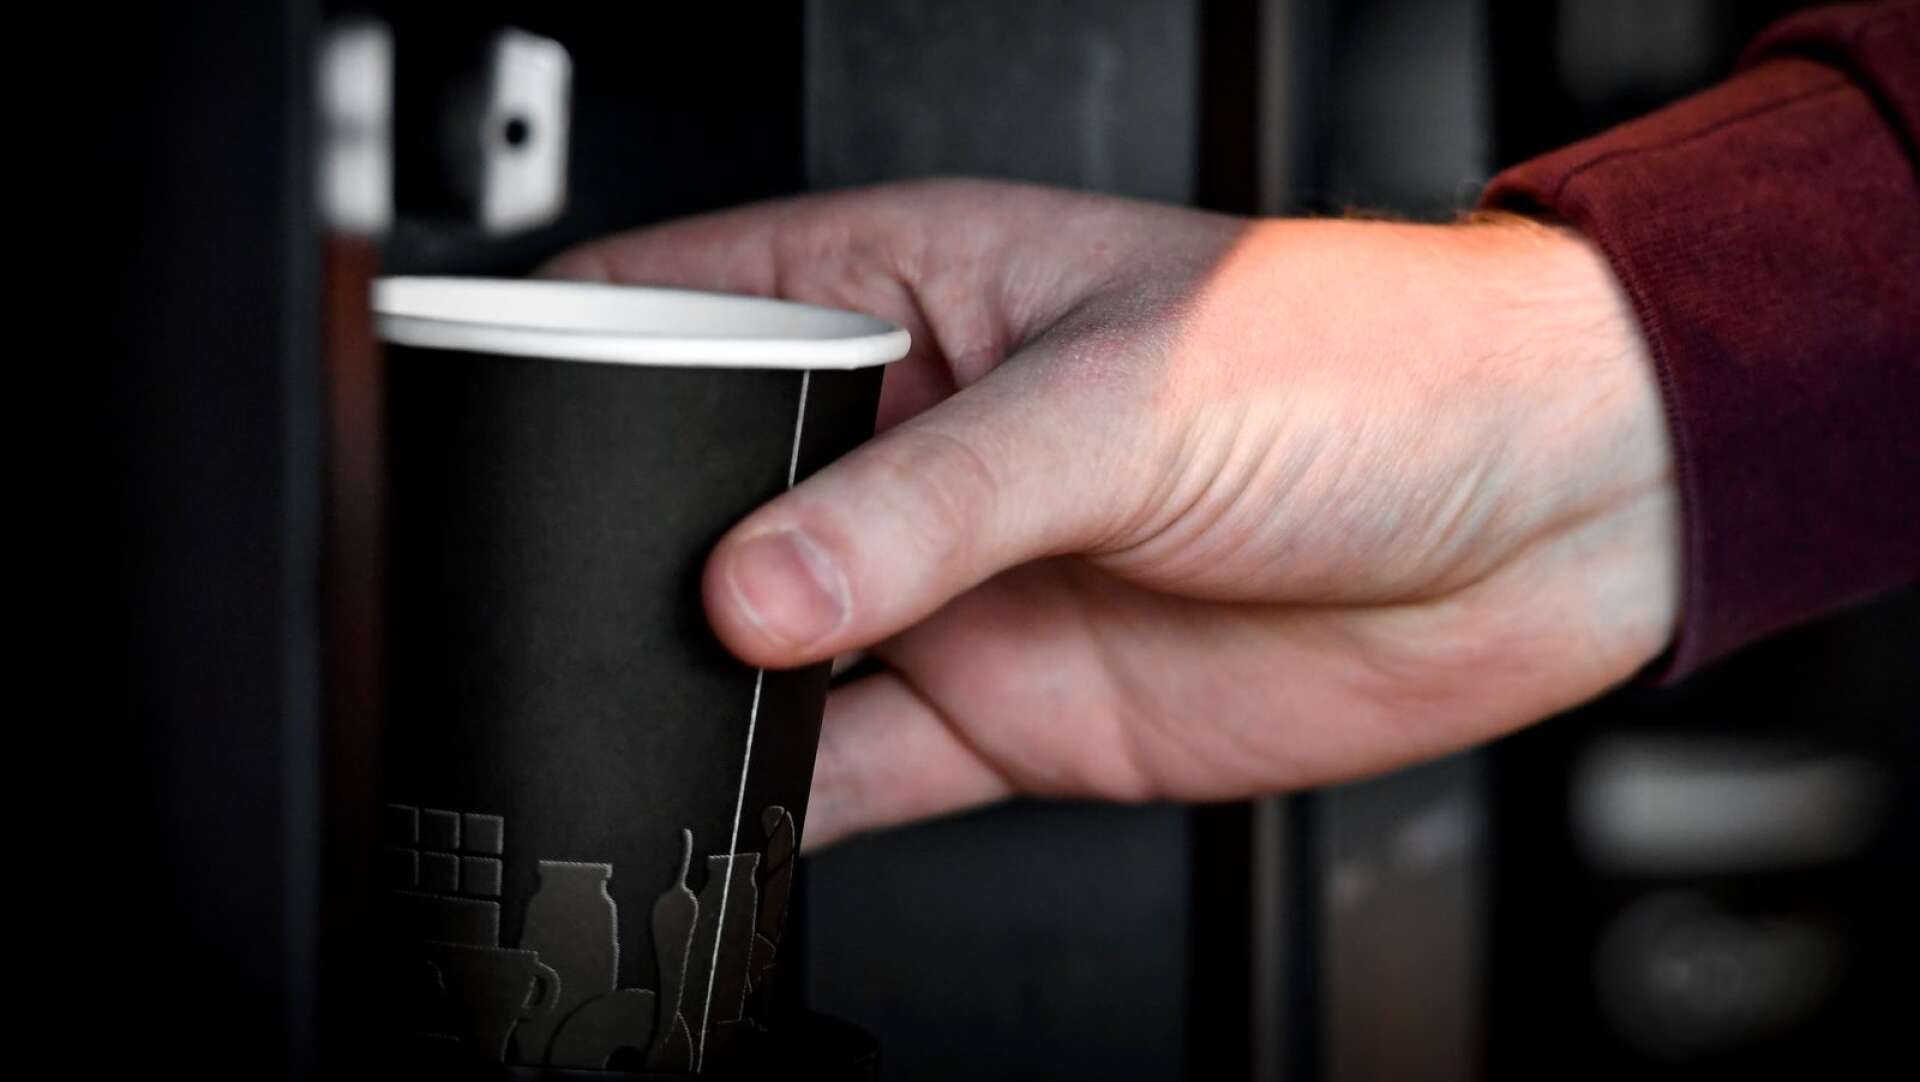 En man i 30-årsåldern döms för ofredande efter att ha slängt kaffe på en ex-kompis.